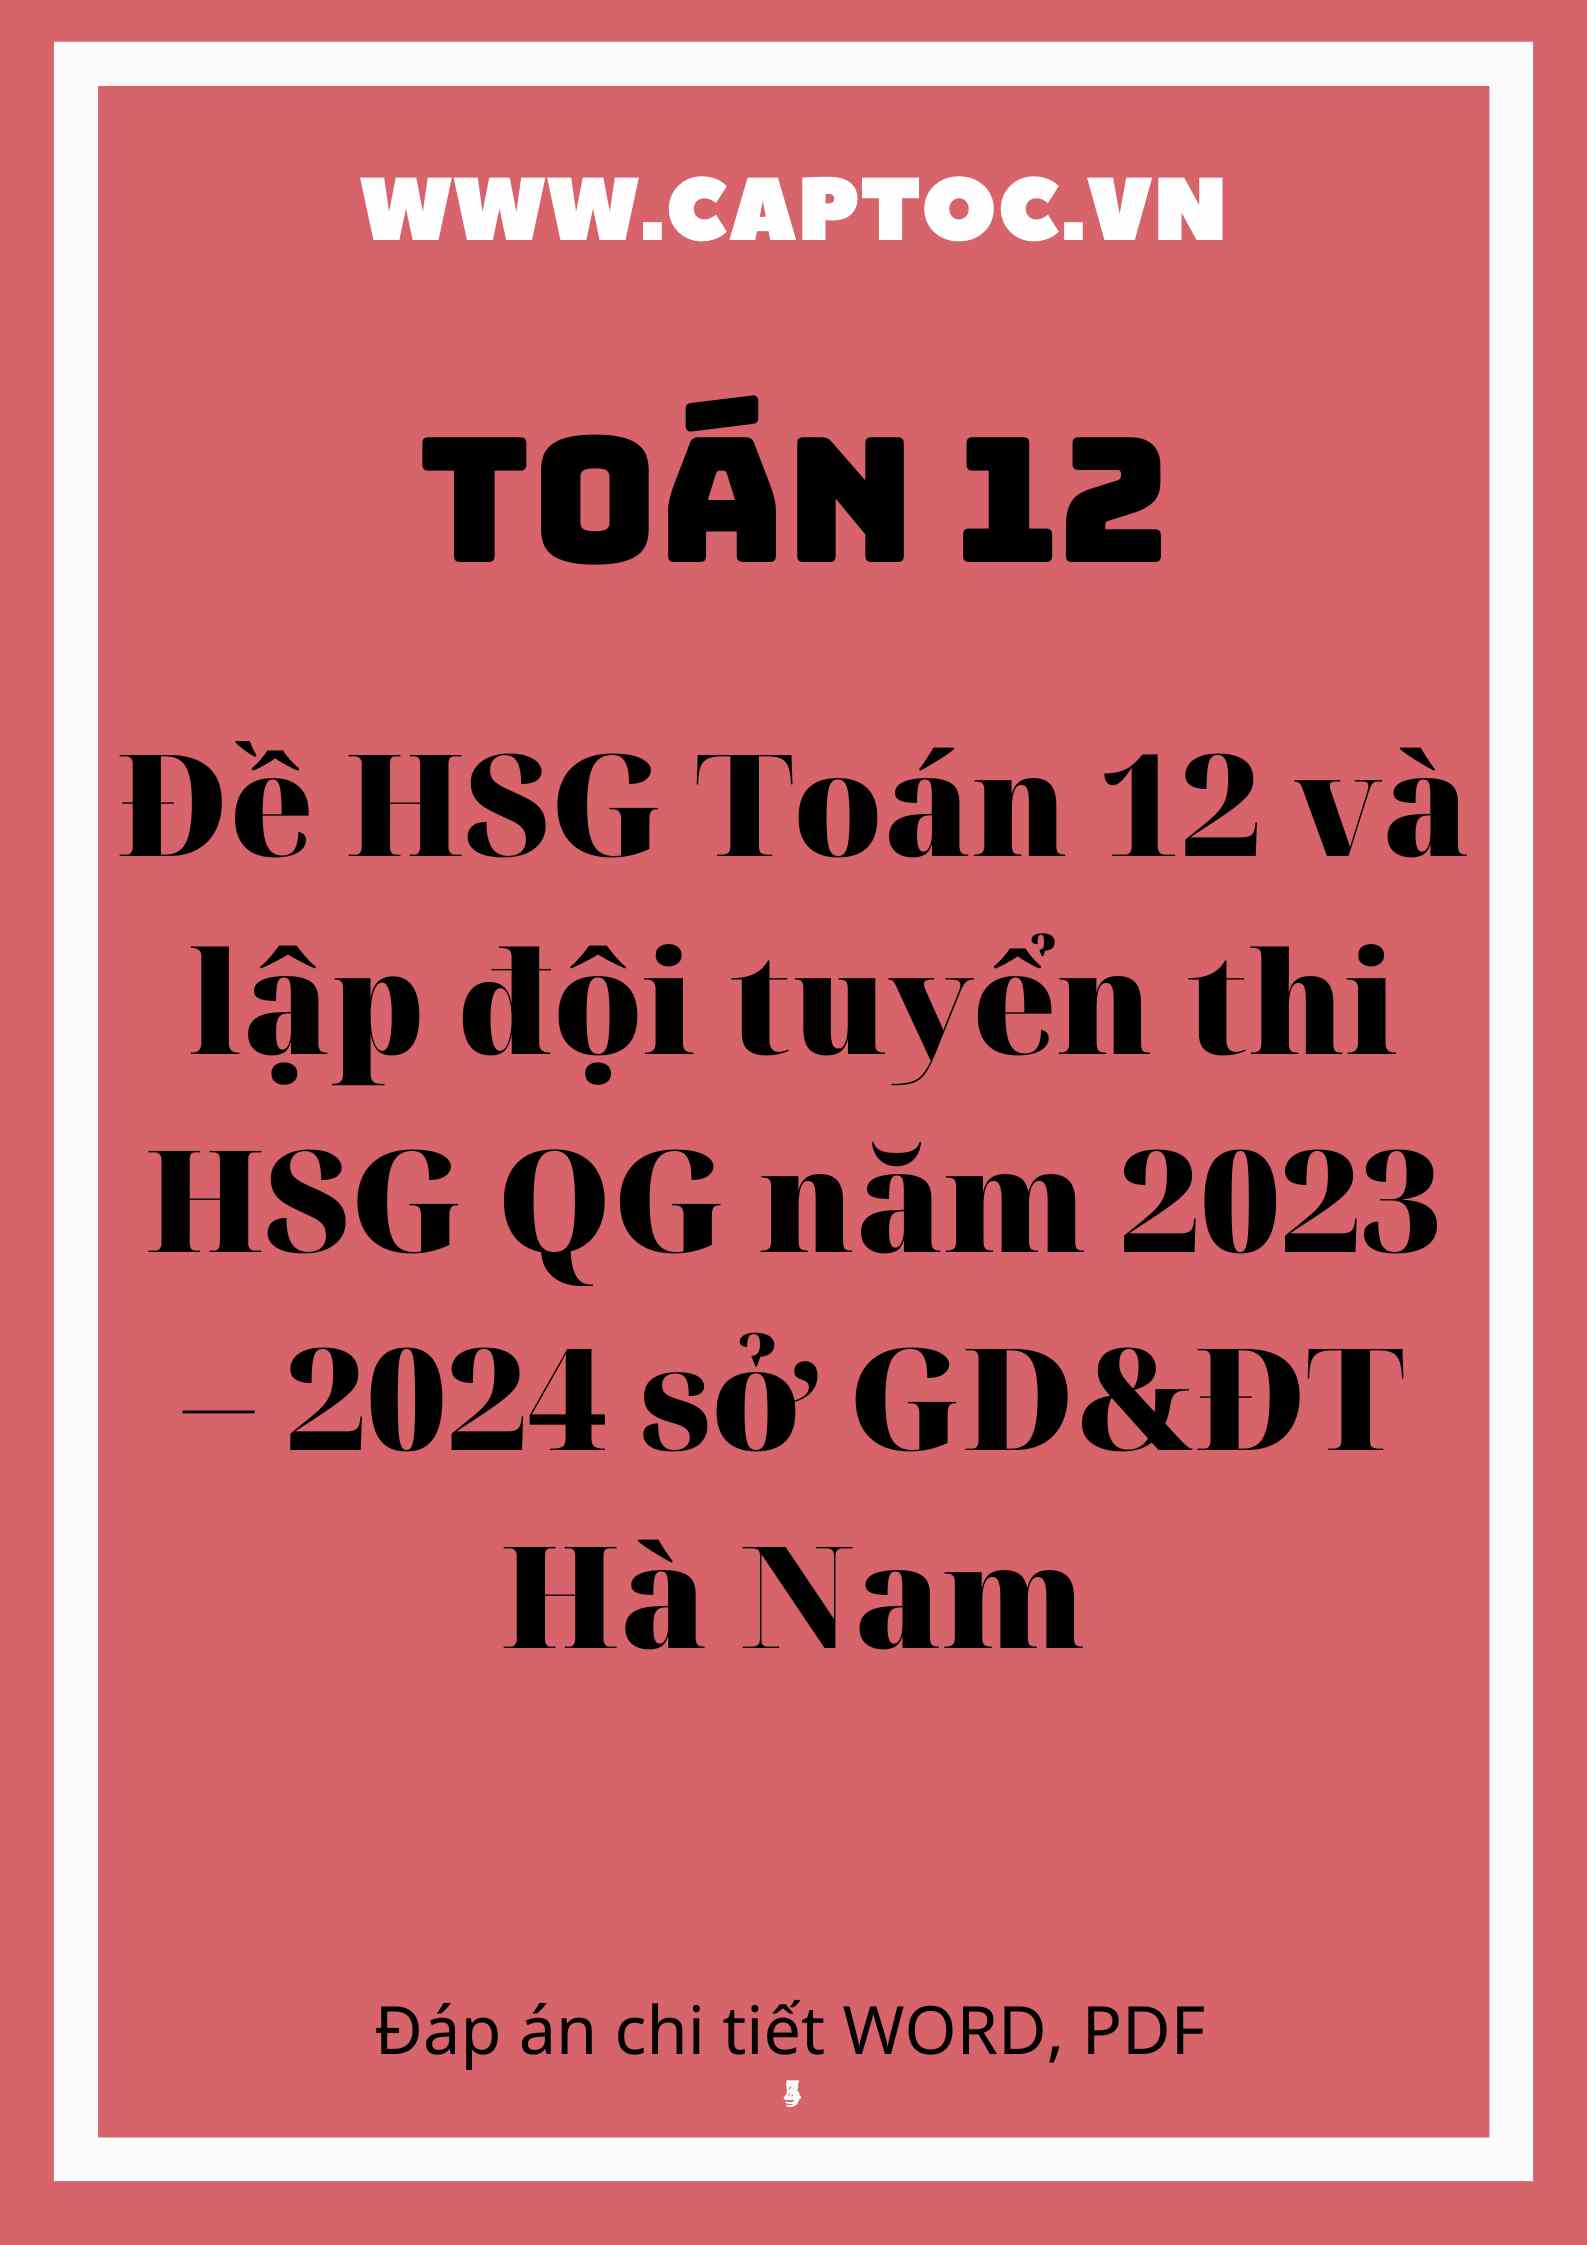 Đề HSG Toán 12 và lập đội tuyển thi HSG QG năm 2023 – 2024 sở GD&ĐT Hà Nam